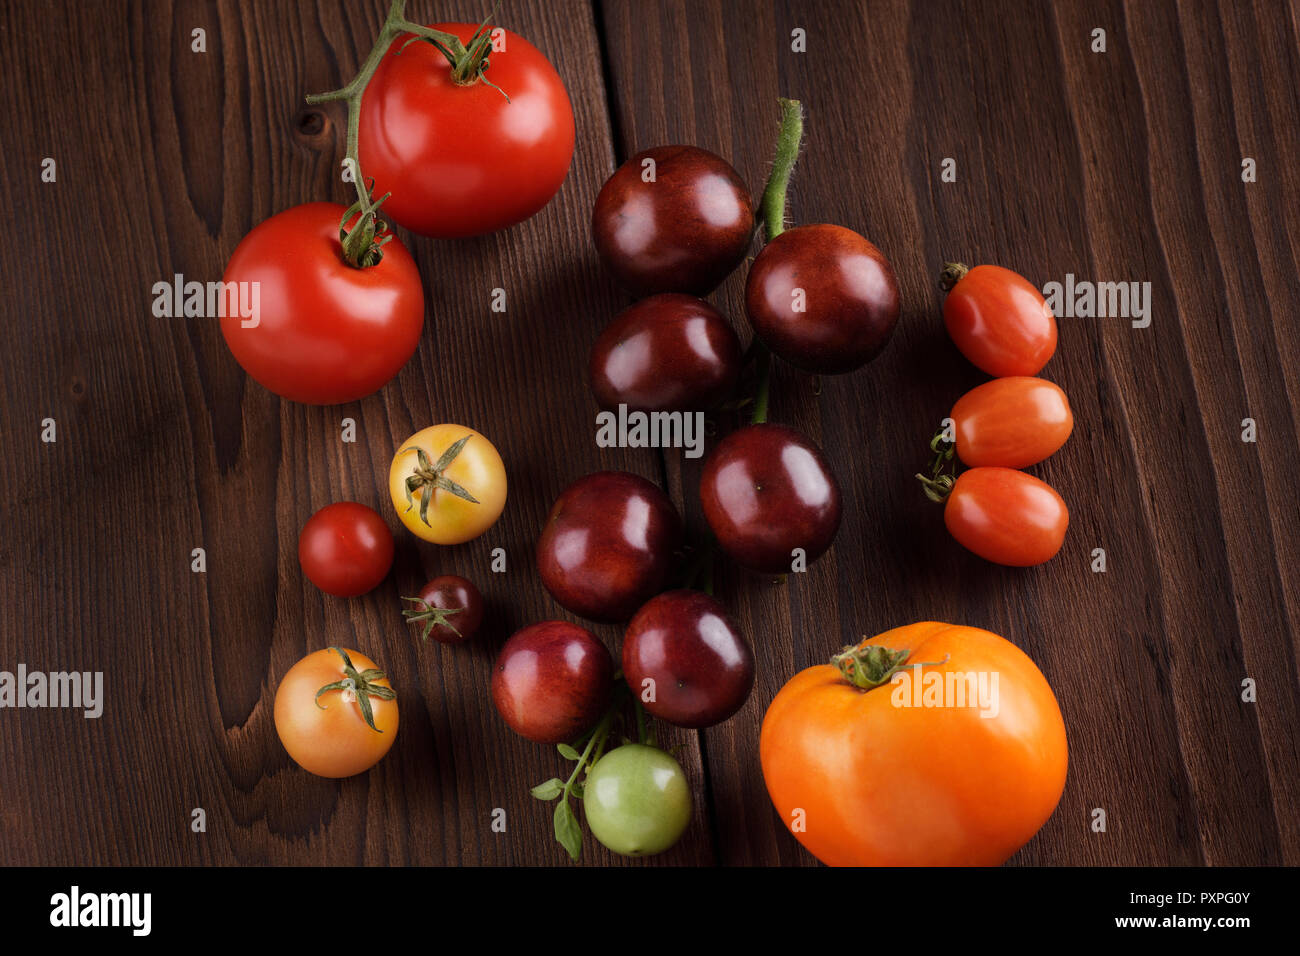 Organische heirloom Tomaten in einer Vielzahl von Größen und Farben, von Violett Indigo Rose, rote und gelbe Kirschtomaten. Künstlerische noch Leben auf der dunklen Woo Stockfoto